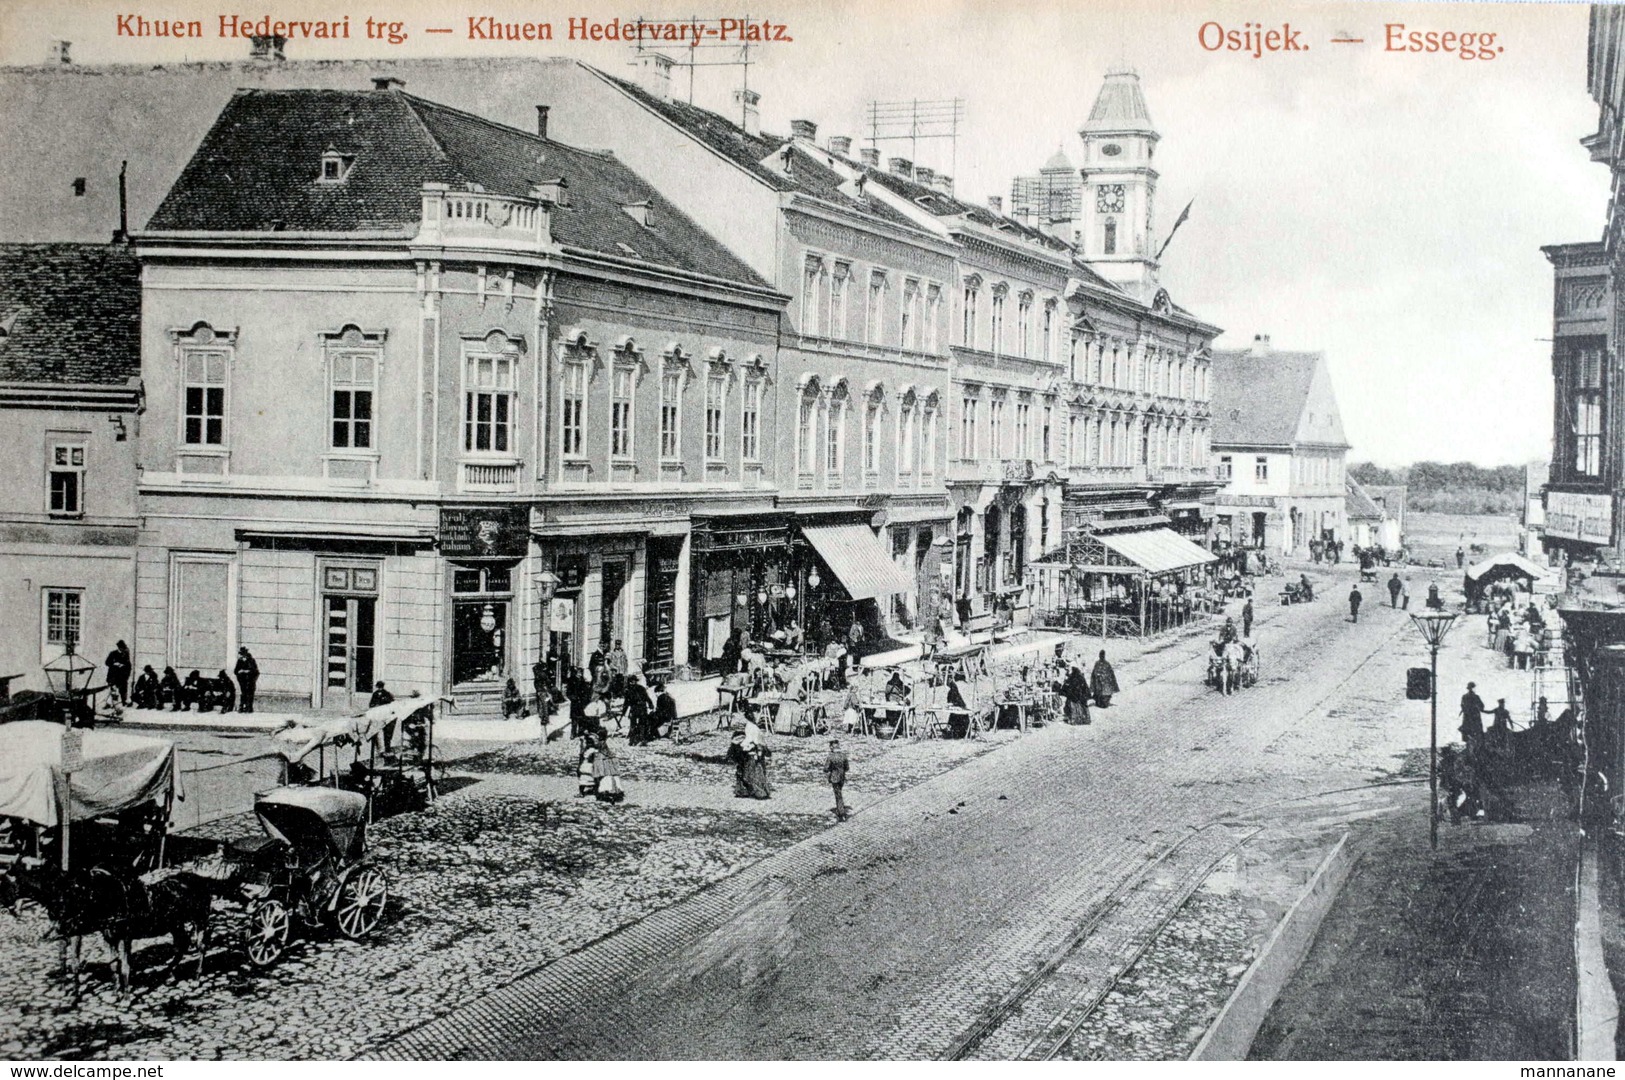 Eszék (Osijek,Essegg) : Khuen Hedervari Trg., Platz , Market    Ca.1910 - Croatia